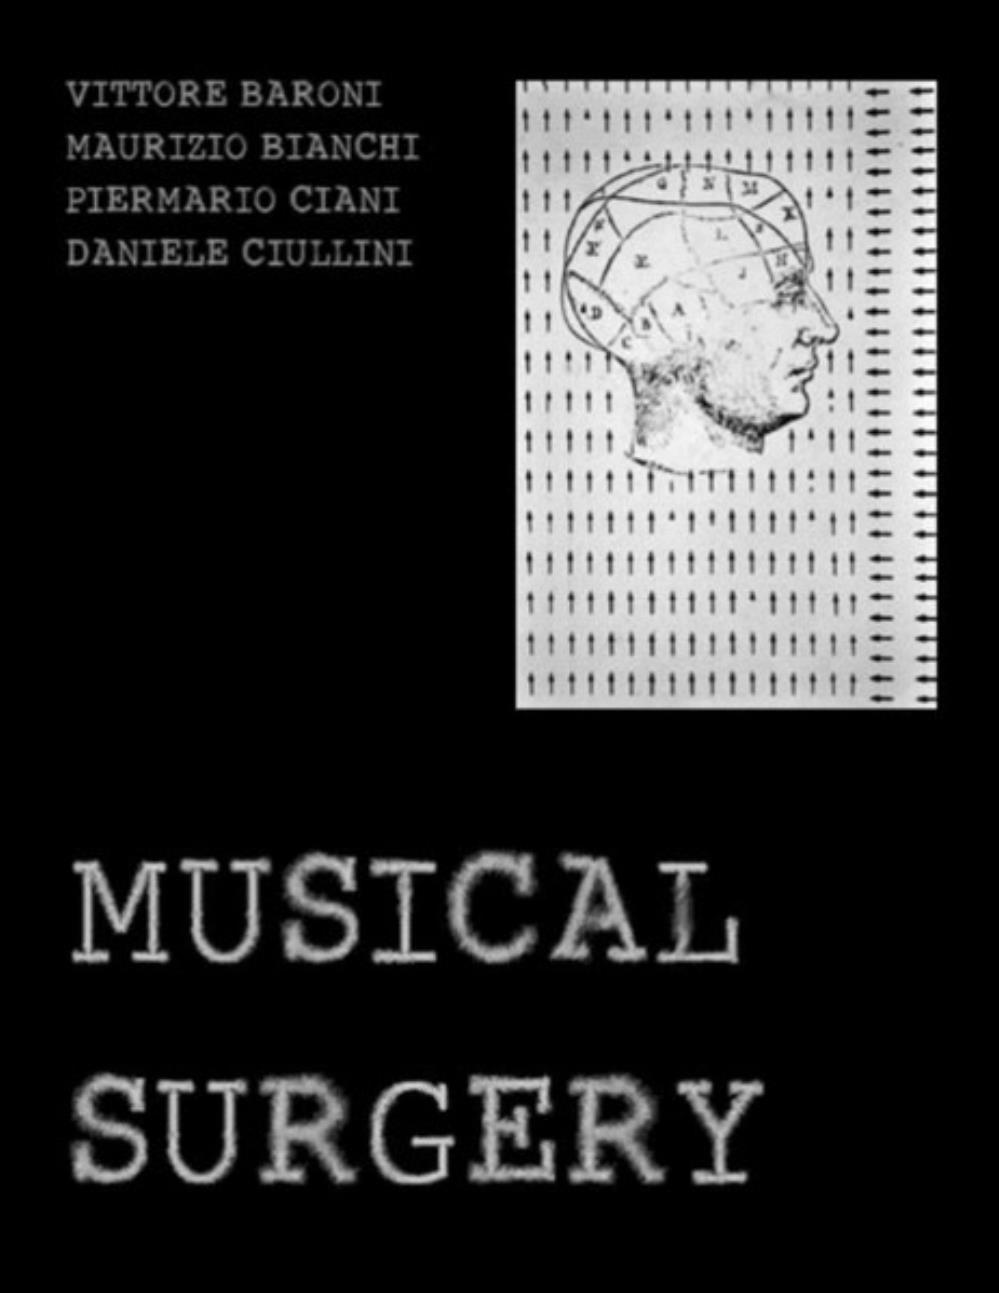 Maurizio Bianchi - Musical Surgery (collaboration with Vittore Baroni, Piermario Ciani & Daniele Ciullini) CD (album) cover